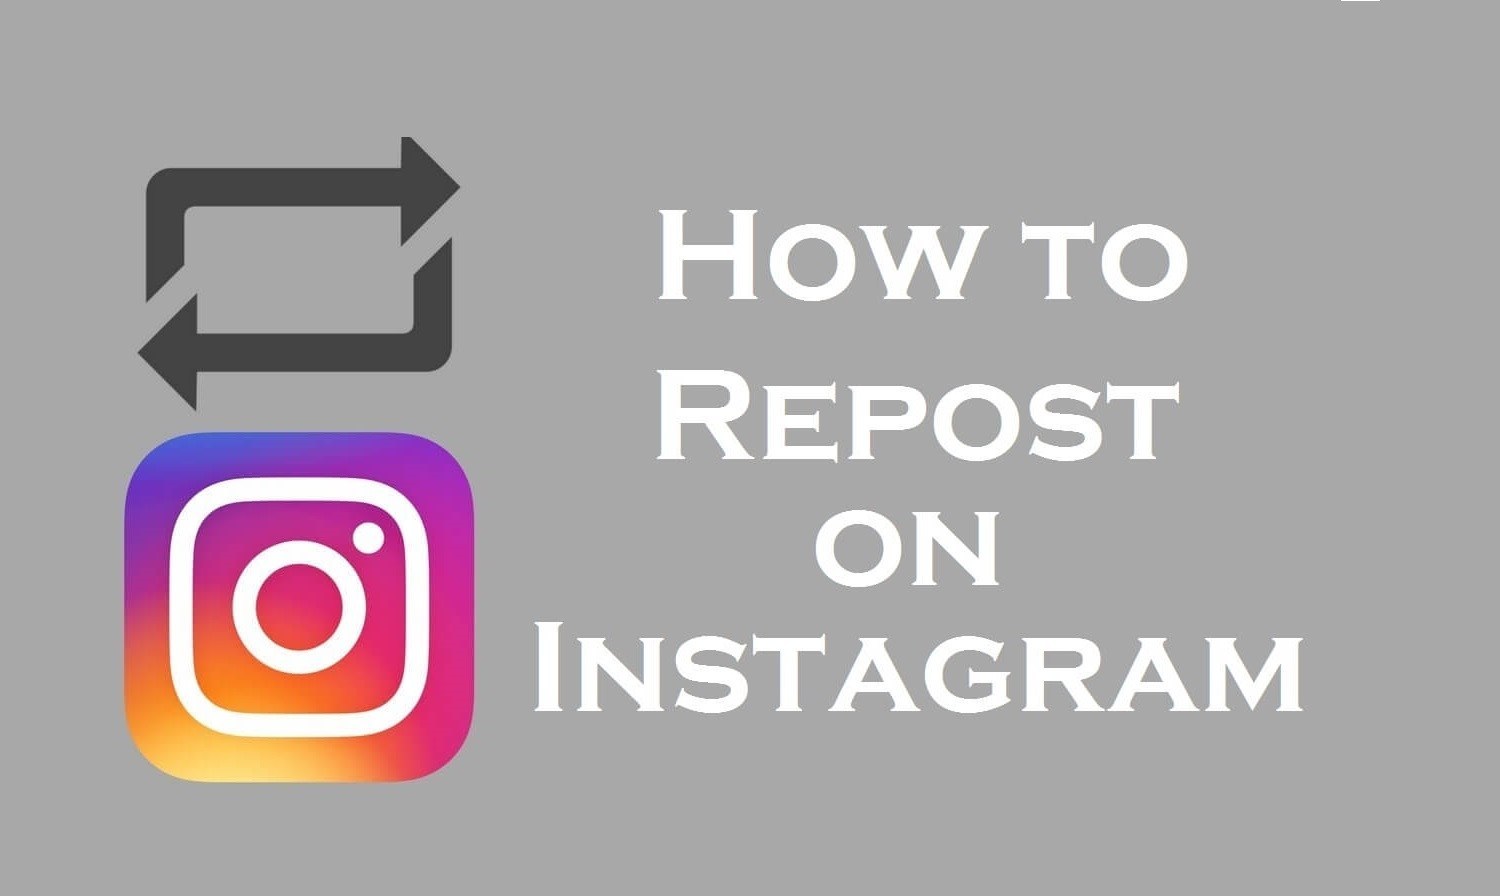 Nola birsortu Instagram [2 Simple Methods]
